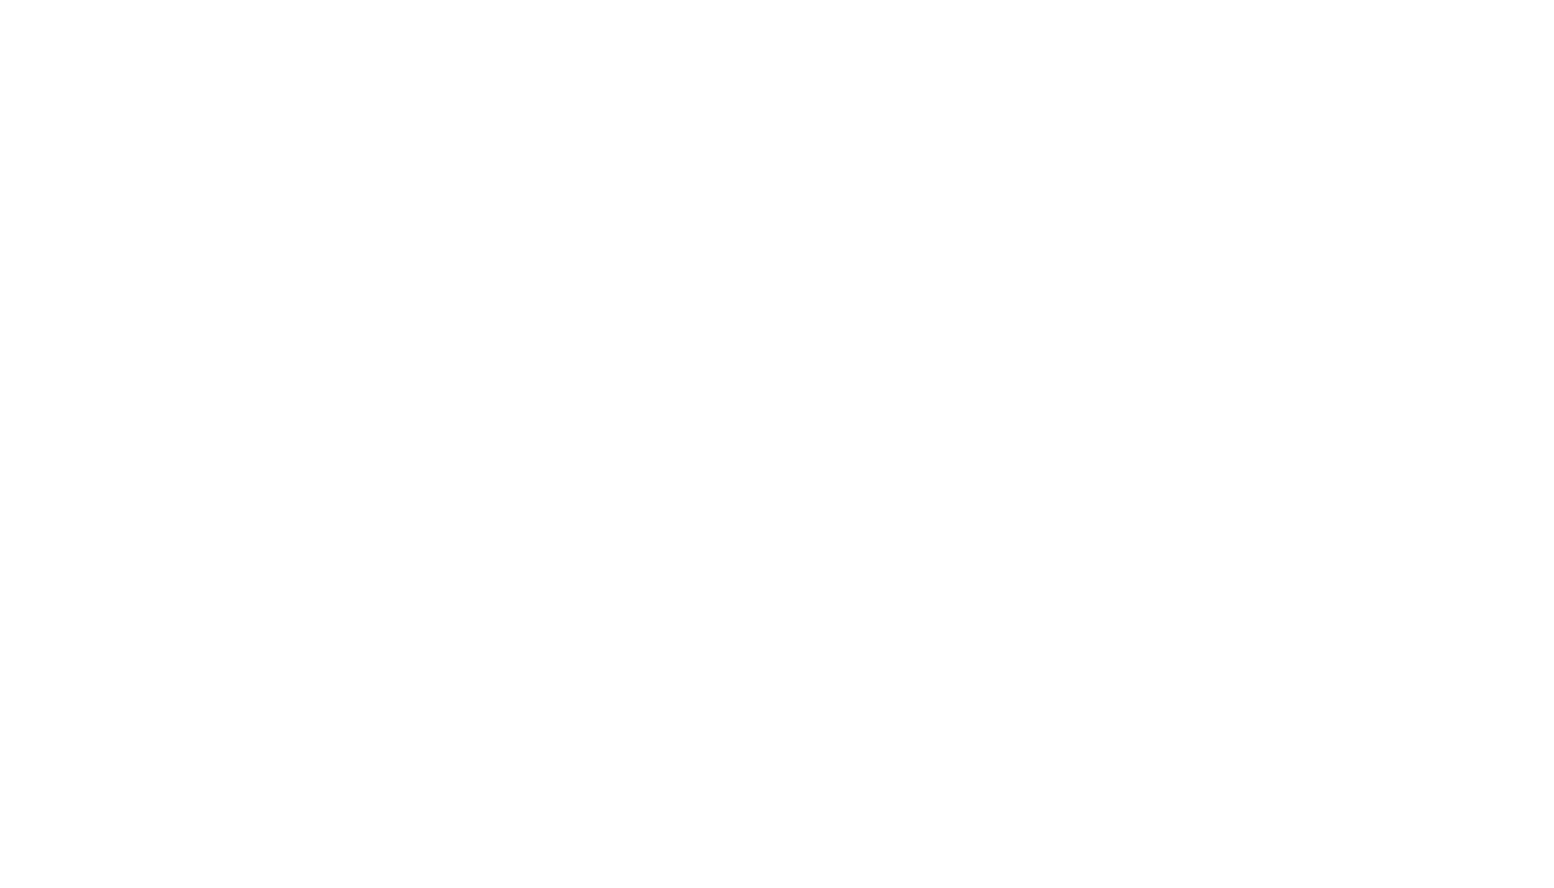 Expeditors logo for dark backgrounds (transparent PNG)